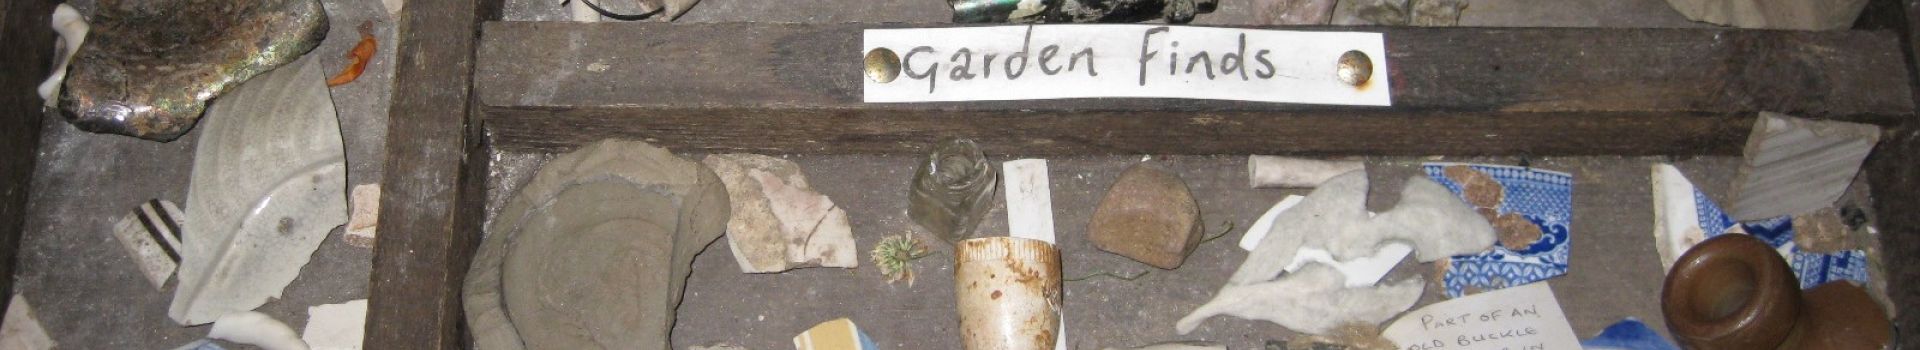 Garden finds